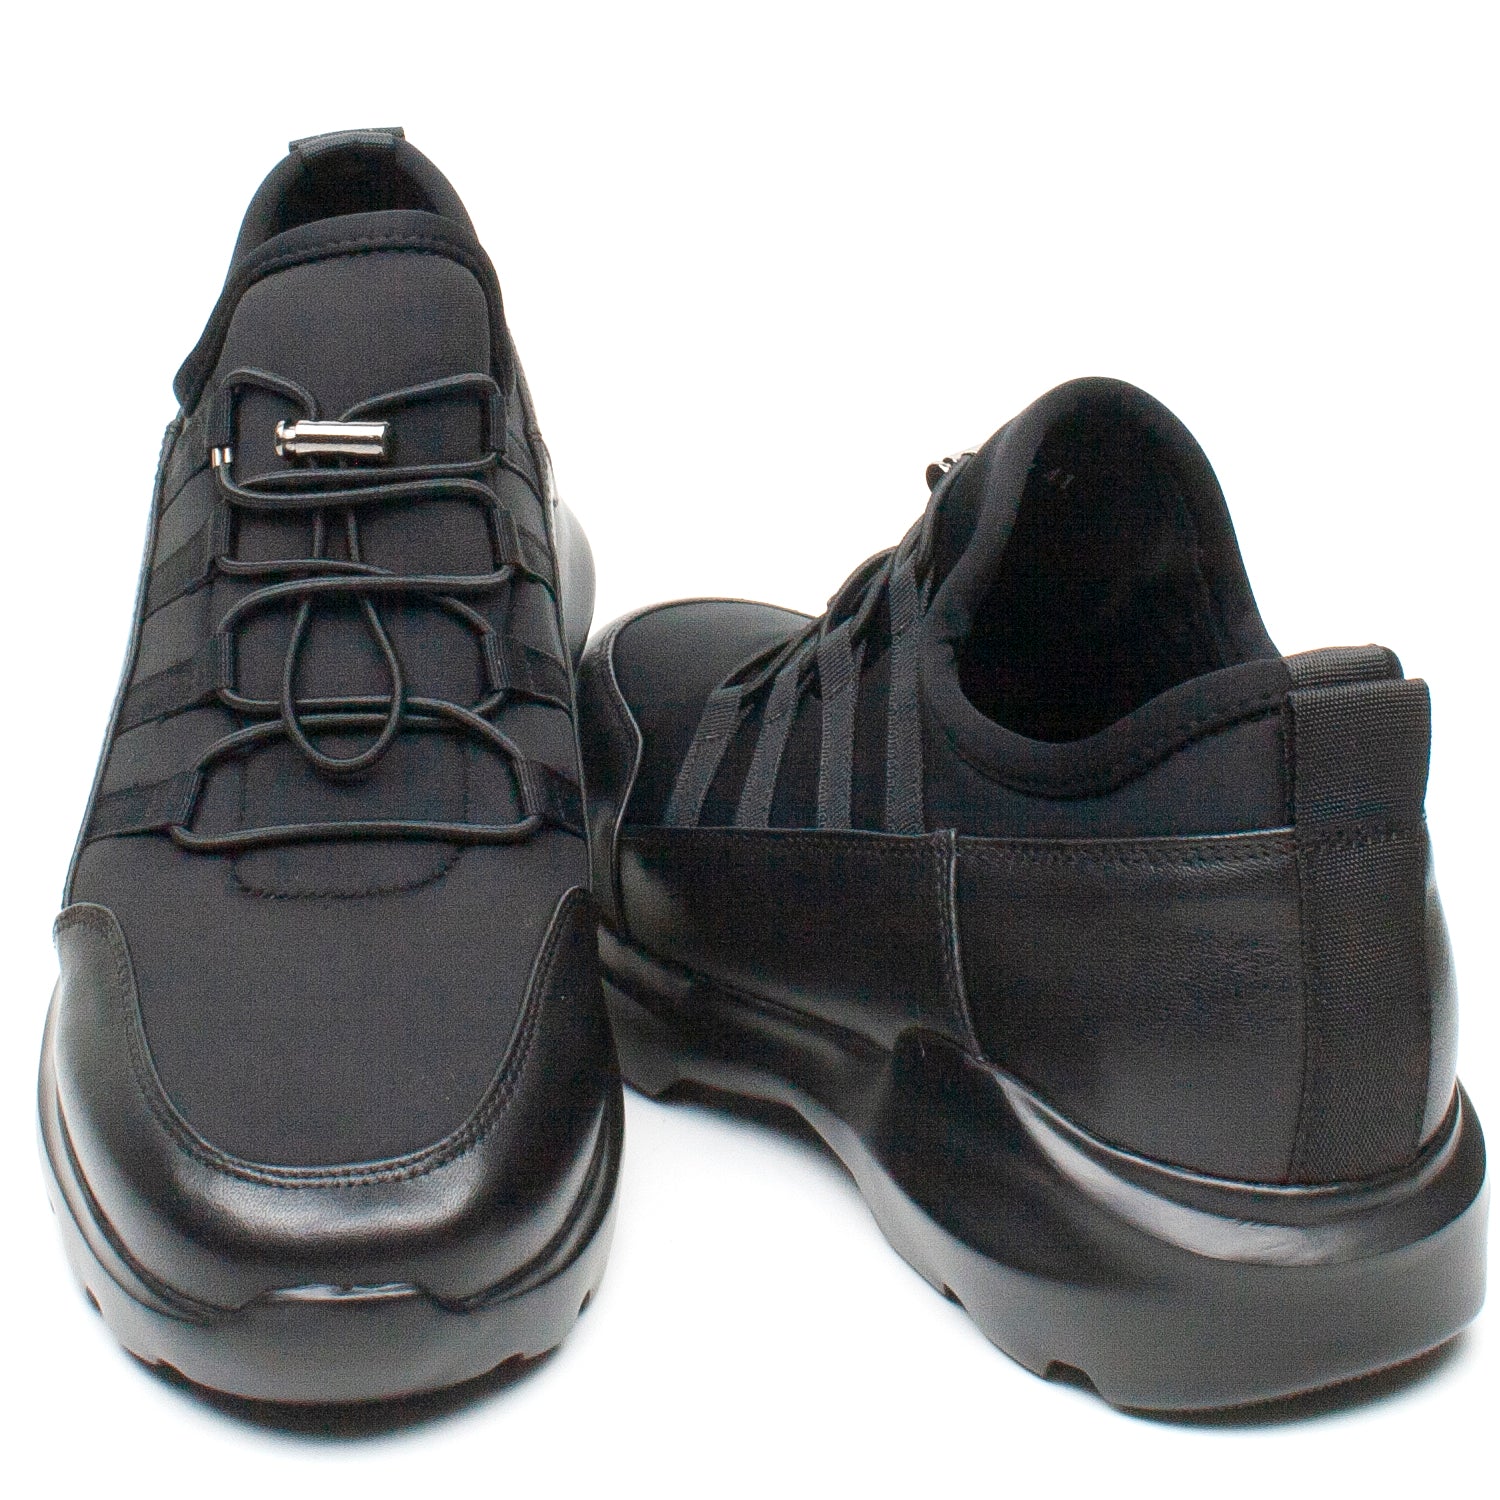 Franco Gerardo Pantofi barbati 607 17 negru IB2270-NG